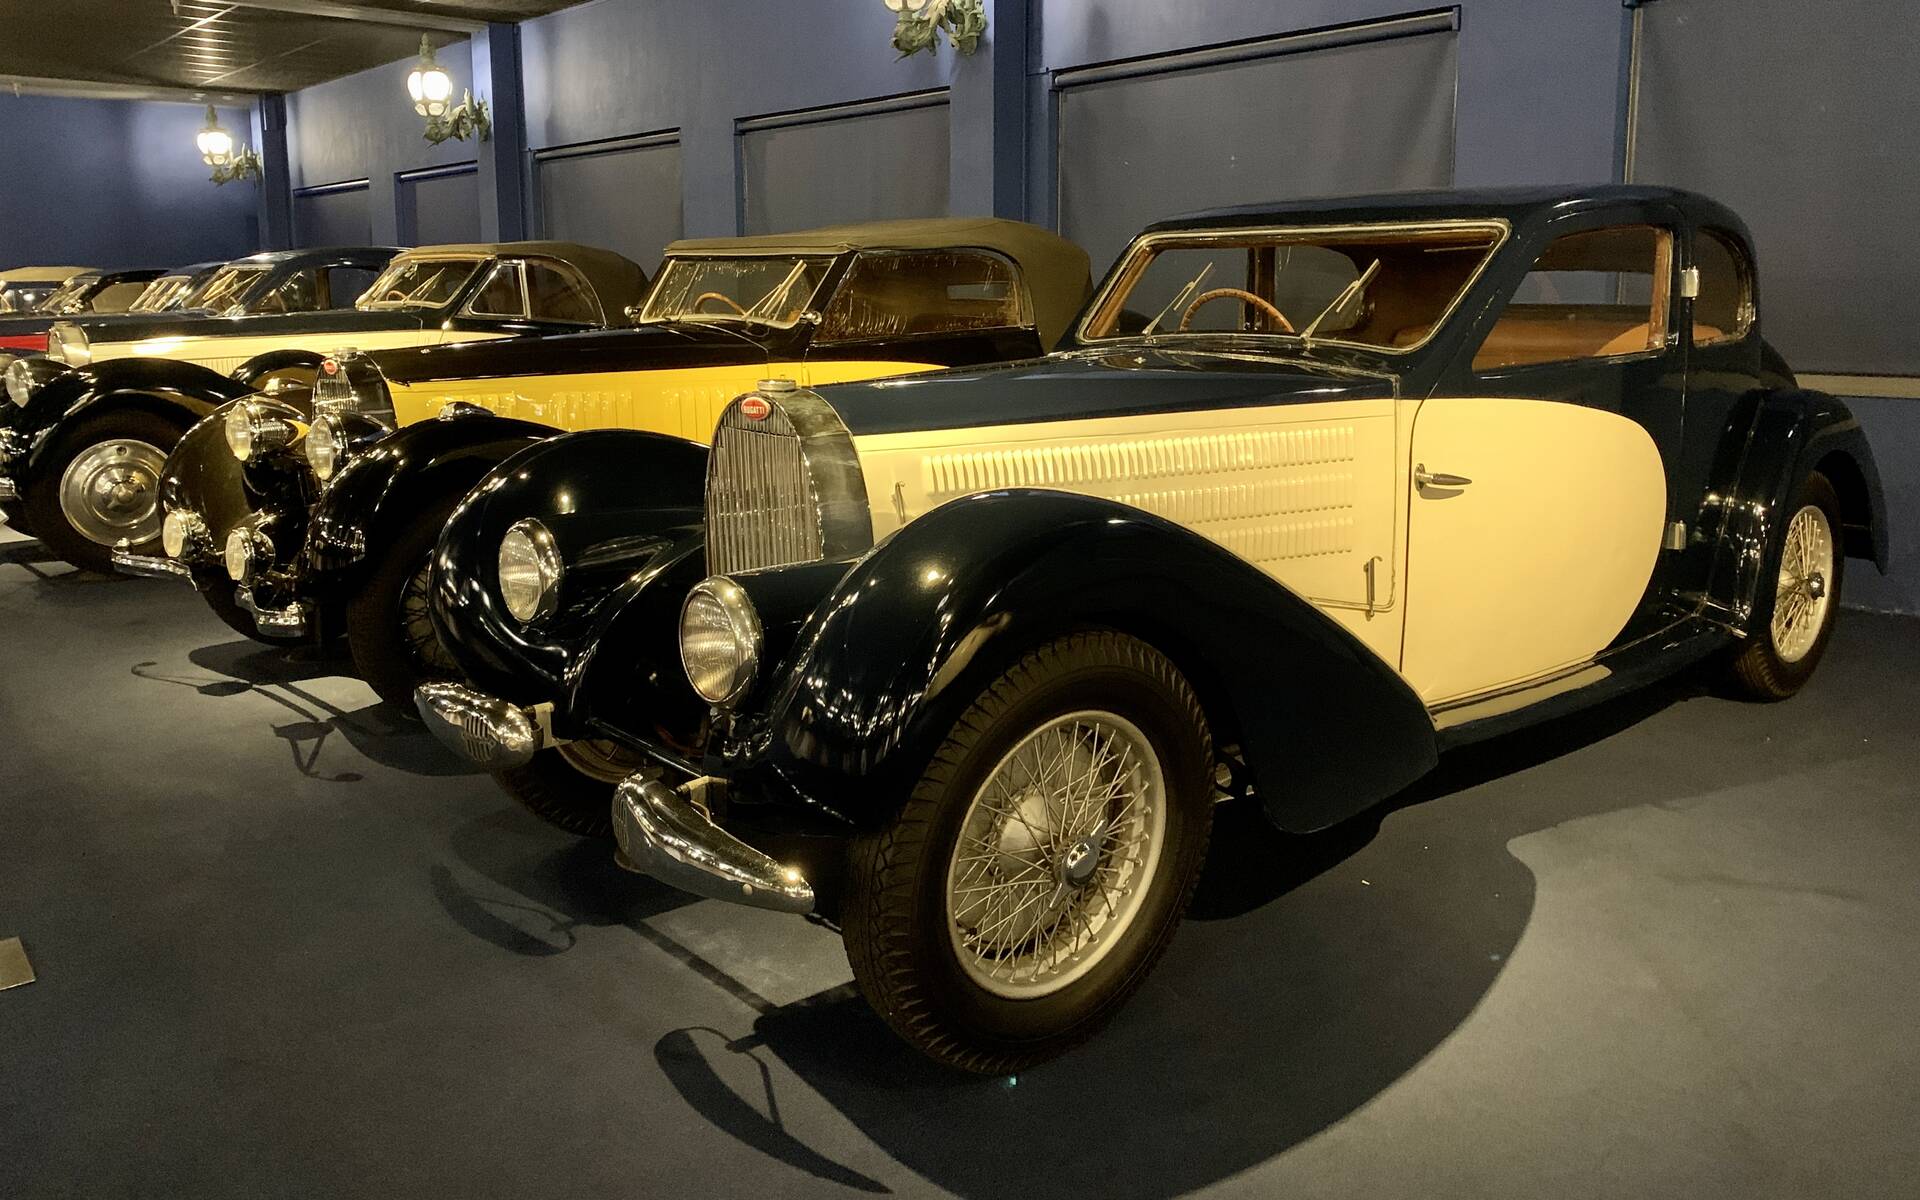 En photos : une centaine de Bugatti réunies dans un même musée 503106-en-photos-des-dizaines-de-bugatti-reunies-dans-un-meme-musee